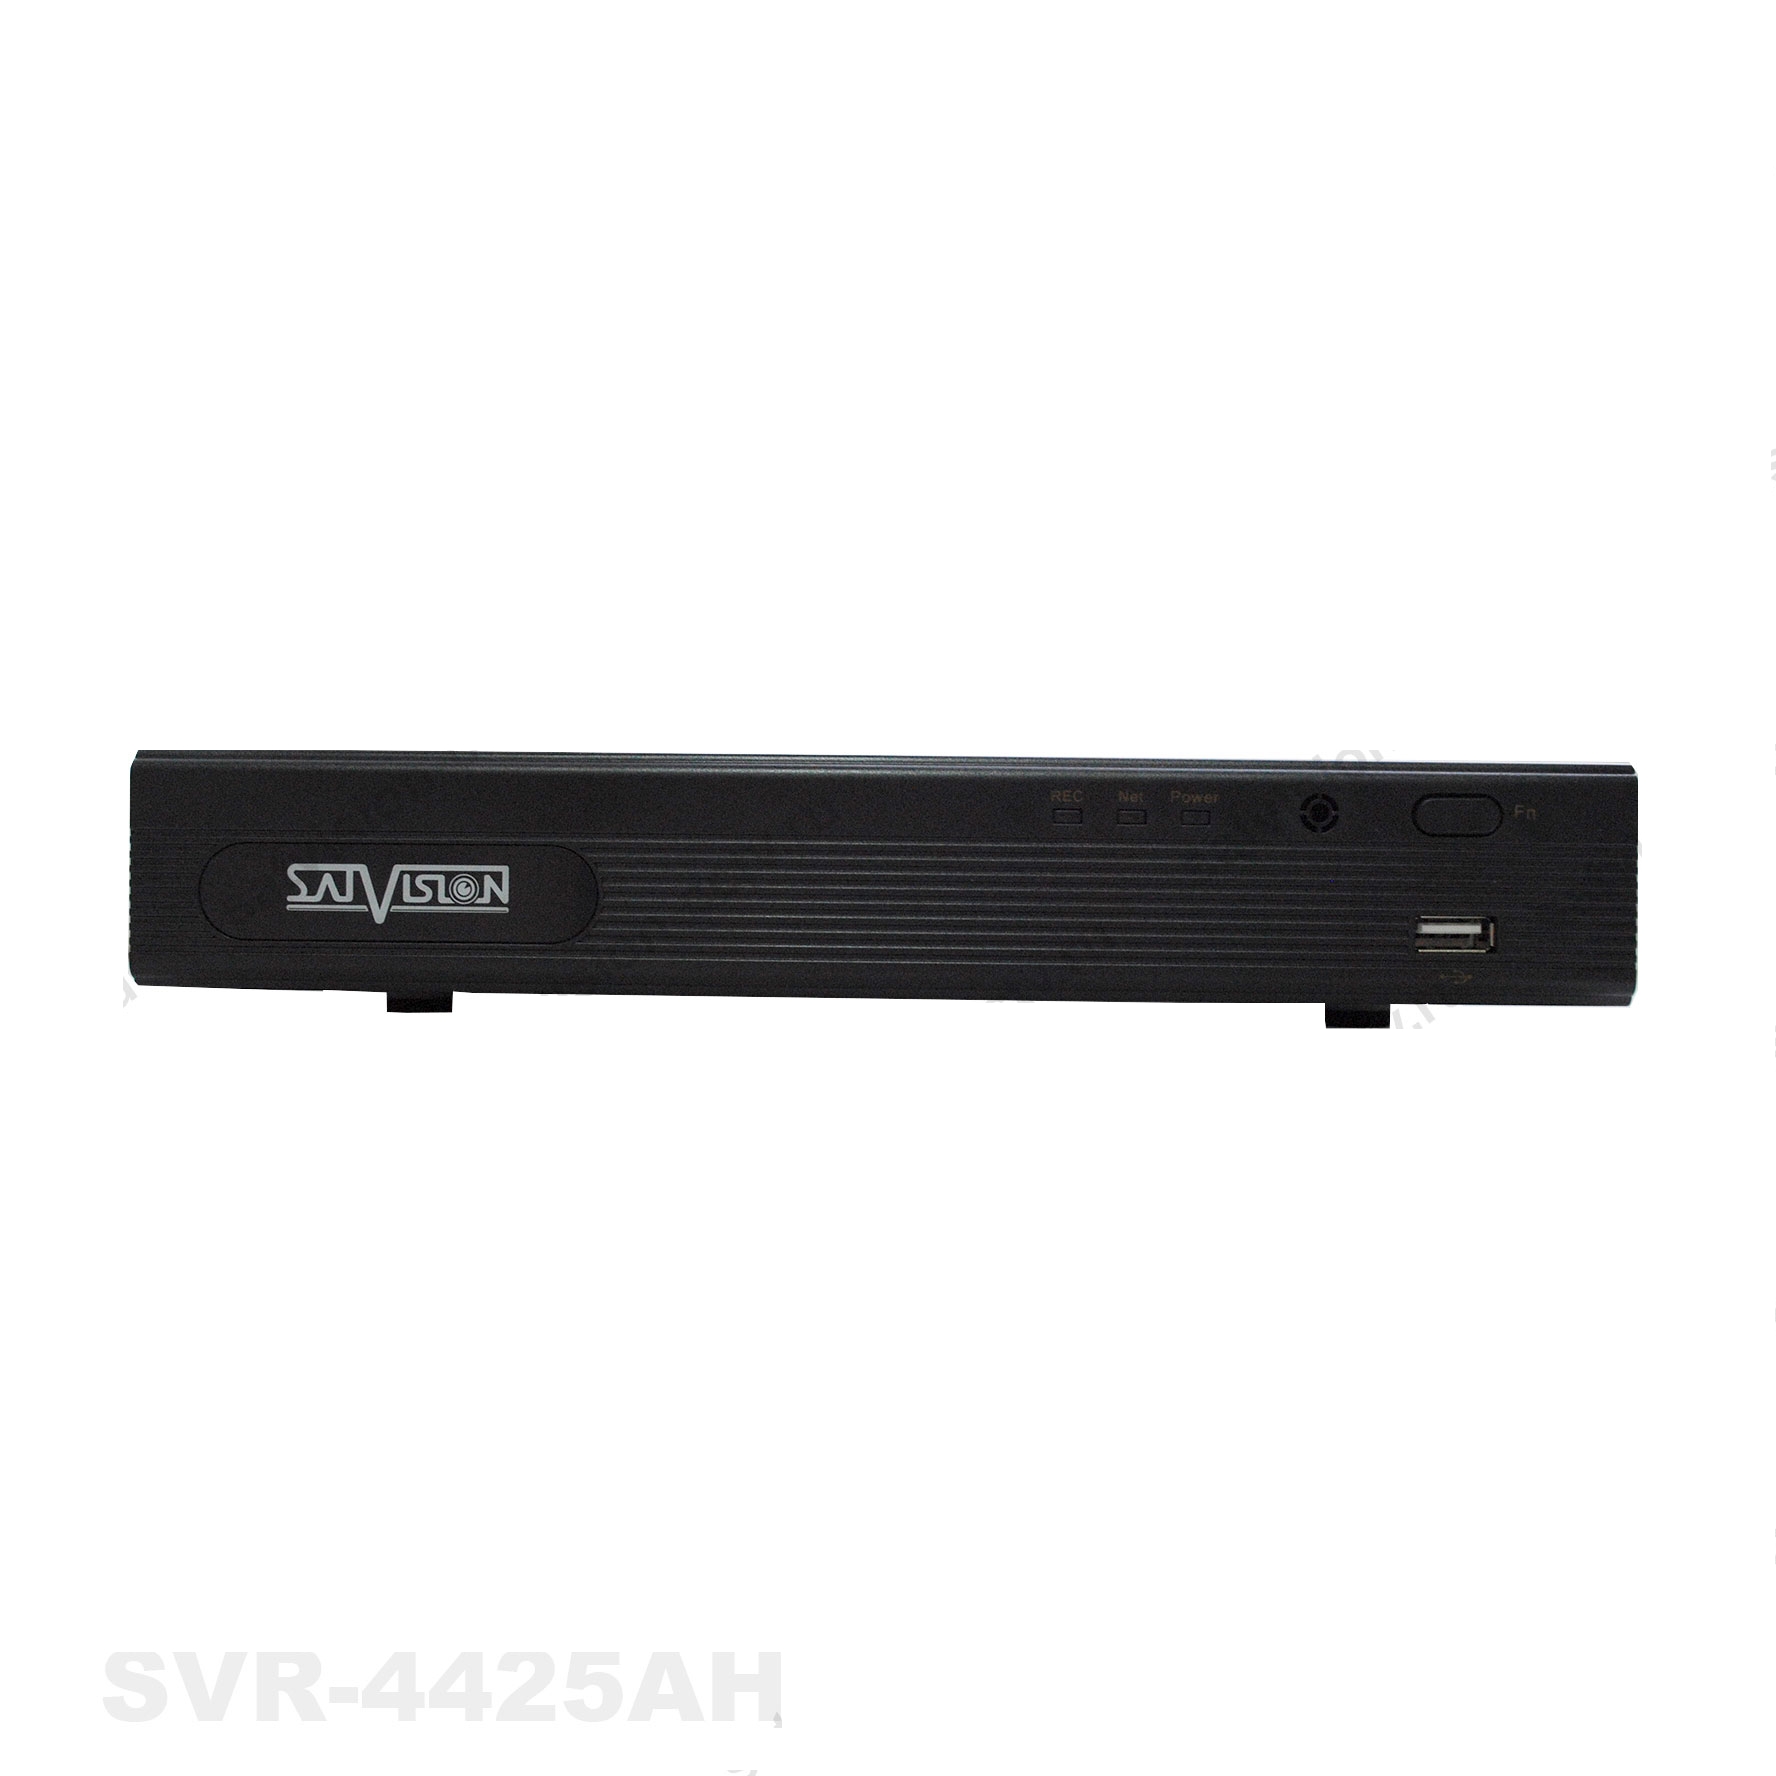 Система видеонаблюдения Satvision SVR4812AH